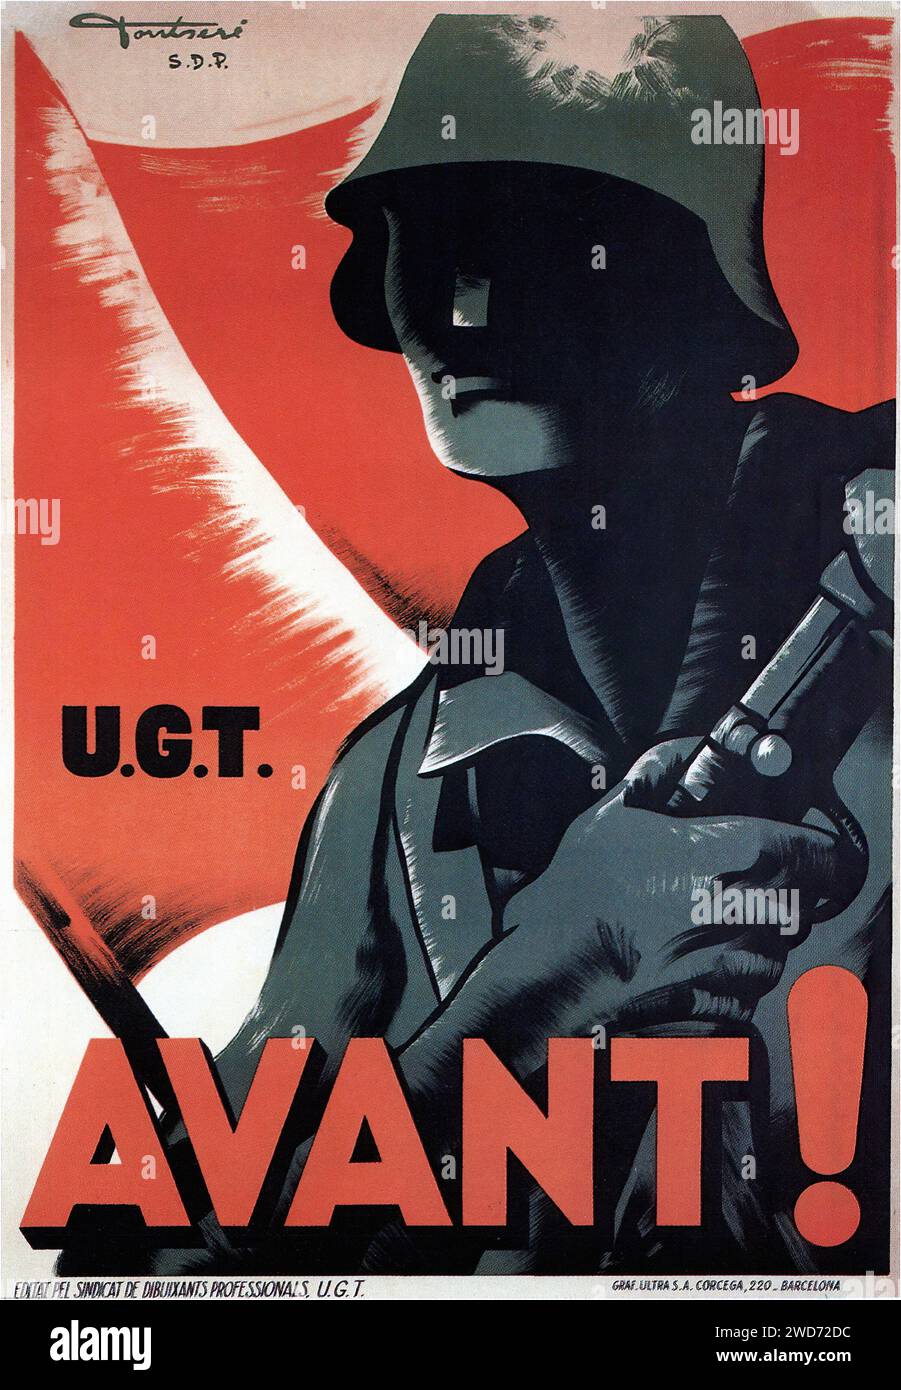 'AVANT! U.G.T.' 'FORWARD! U.G.T.' Ceci est une affiche de propagande vintage de l'époque de la guerre civile espagnole, avec l'acronyme 'U.G.T.' se référant à l'Union générale des travailleurs. Il représente la silhouette d'un soldat sur fond rouge, avec le mot « AVANT ! » Ce qui se traduit par « Suivant ! » en caractères gras. Le design de l'affiche est austère et percutant, utilisant des couleurs très contrastées et des images minimalistes pour transmettre un sentiment d'urgence et de mouvement. - Affiche de propagande de la guerre civile espagnole (Guerra civil Española) Banque D'Images